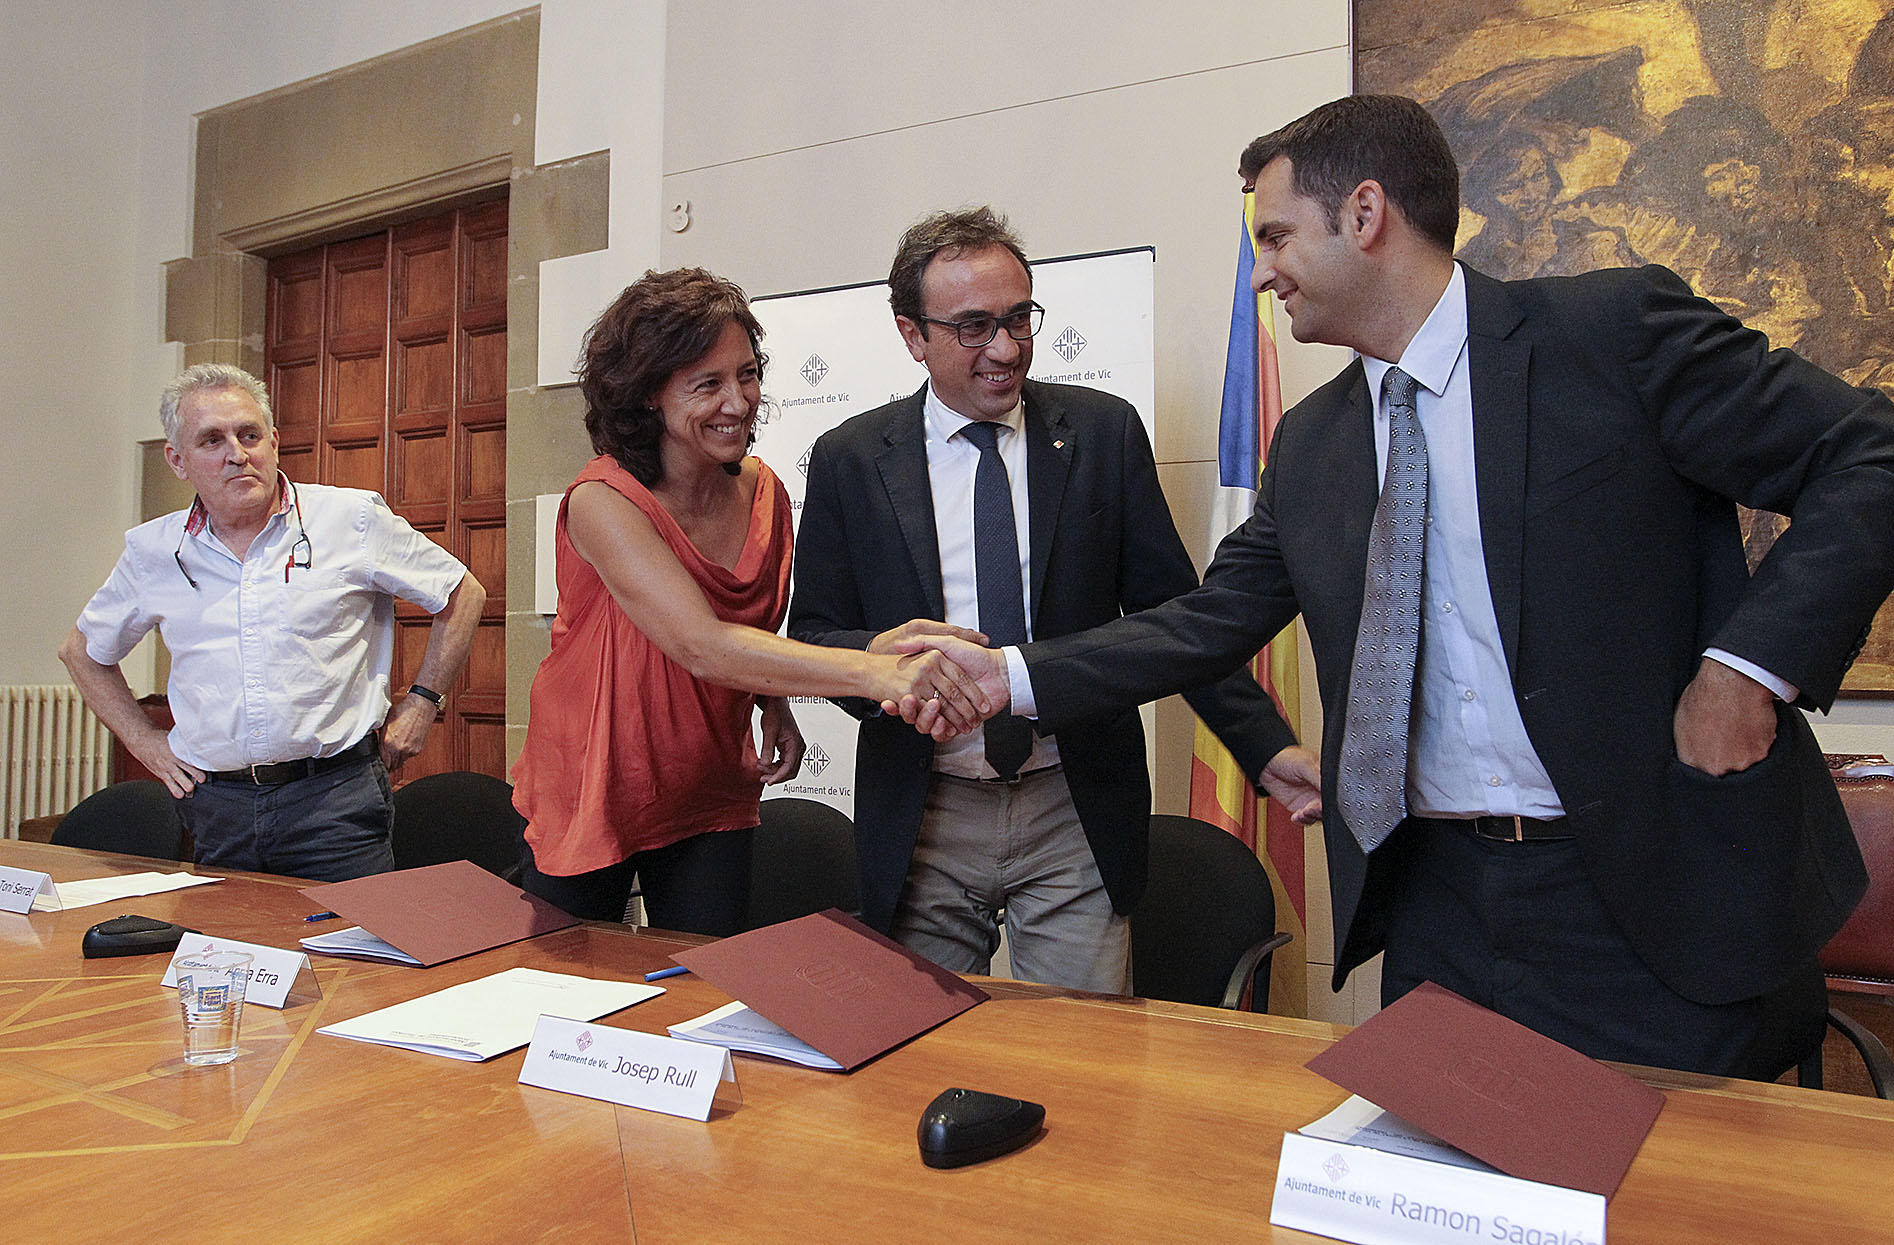 Anna Erra, Josep Rull i Ramon Sagalés van signar divendres el conveni